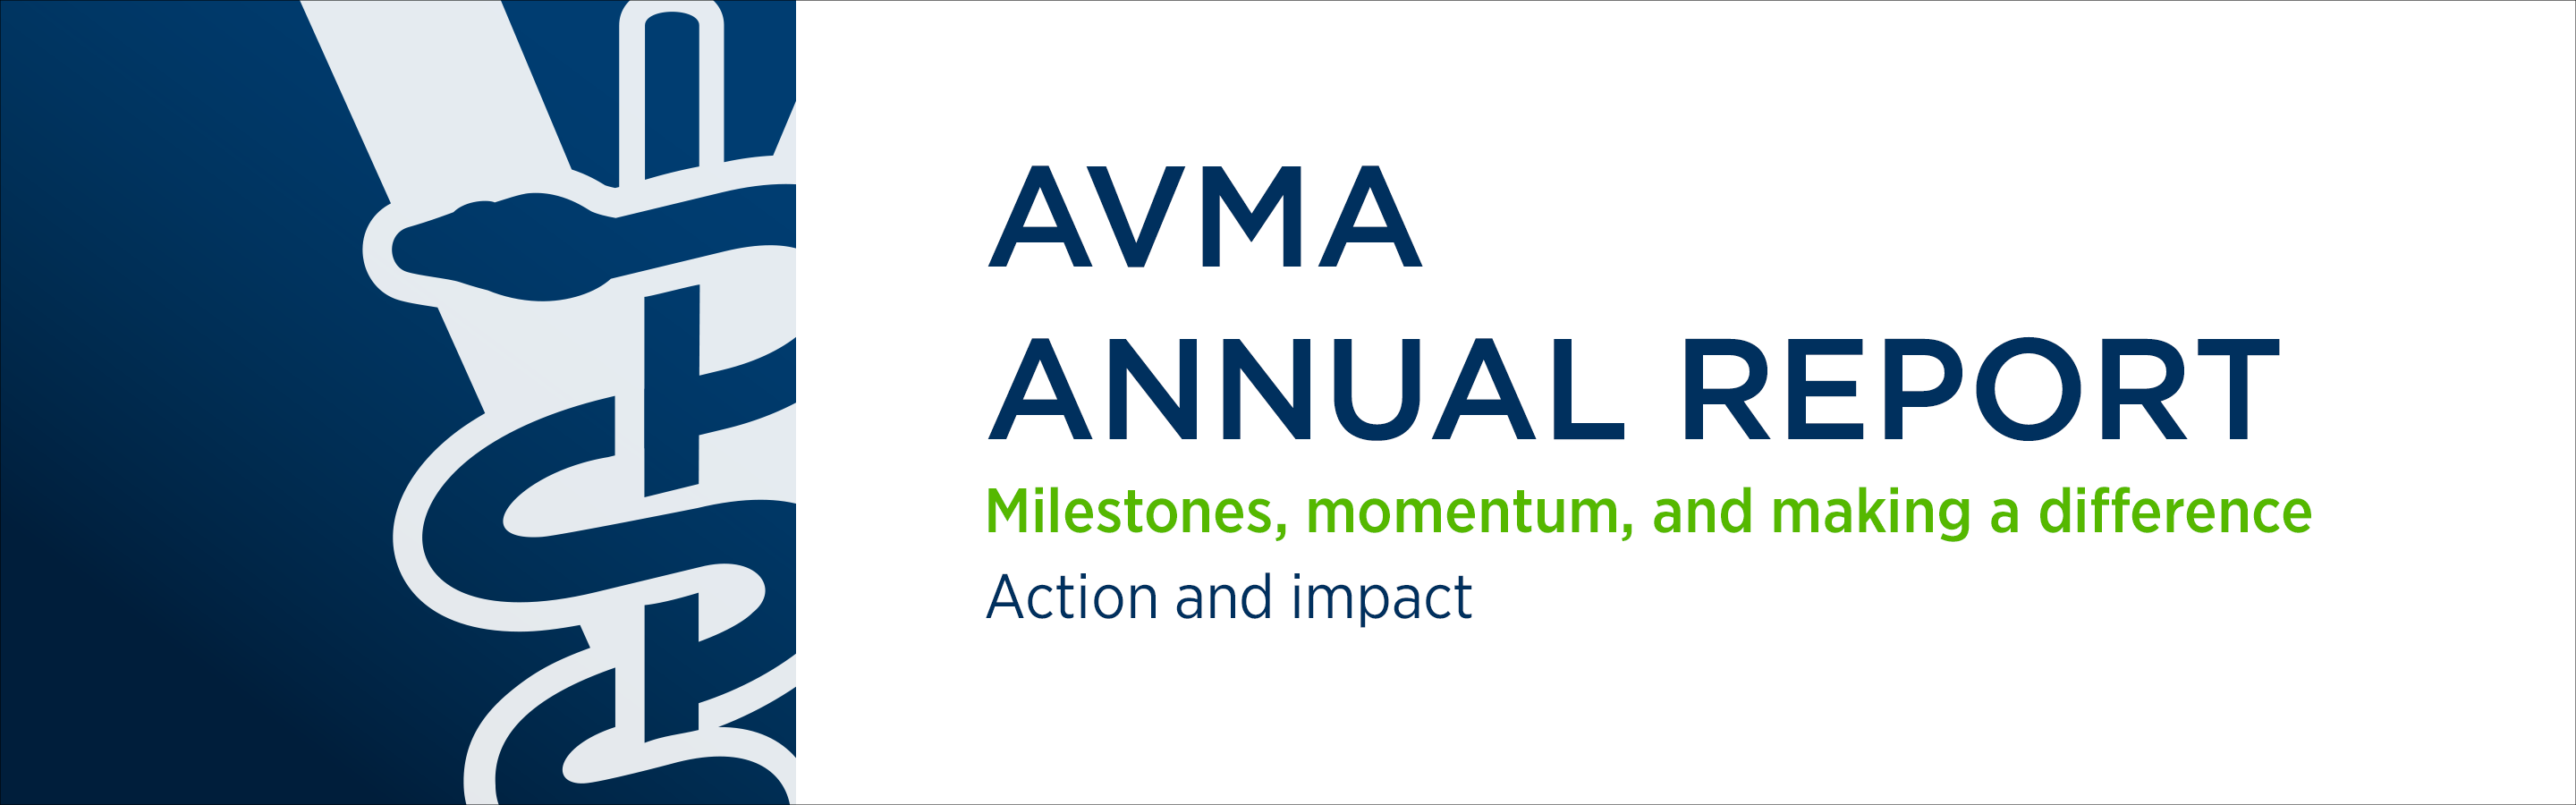 AVMA Annual Report